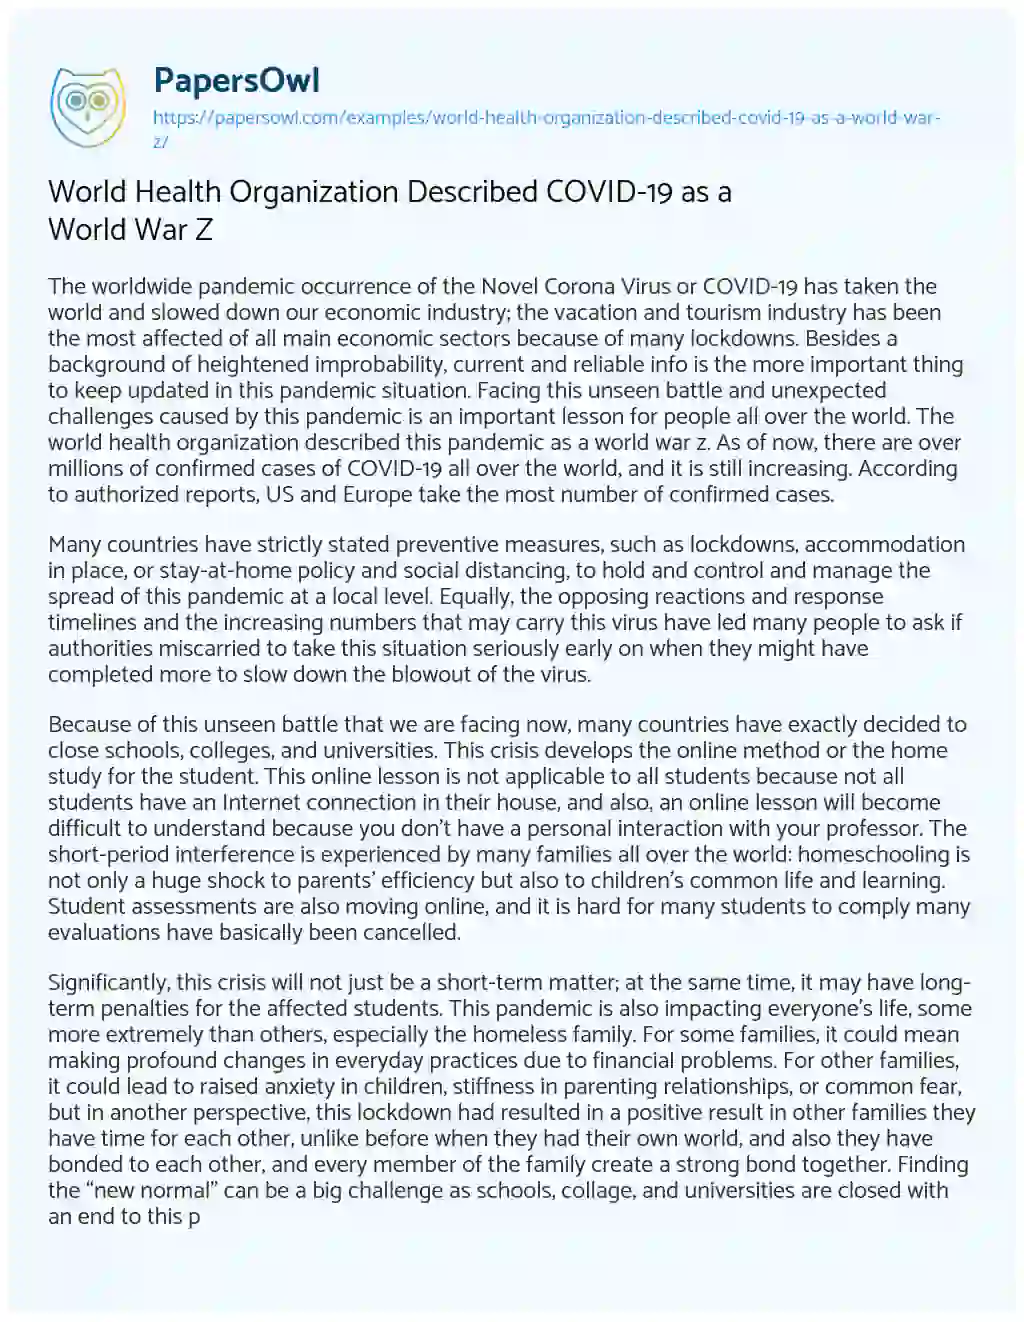 Essay on World Health Organization Described COVID-19 as a World War Z